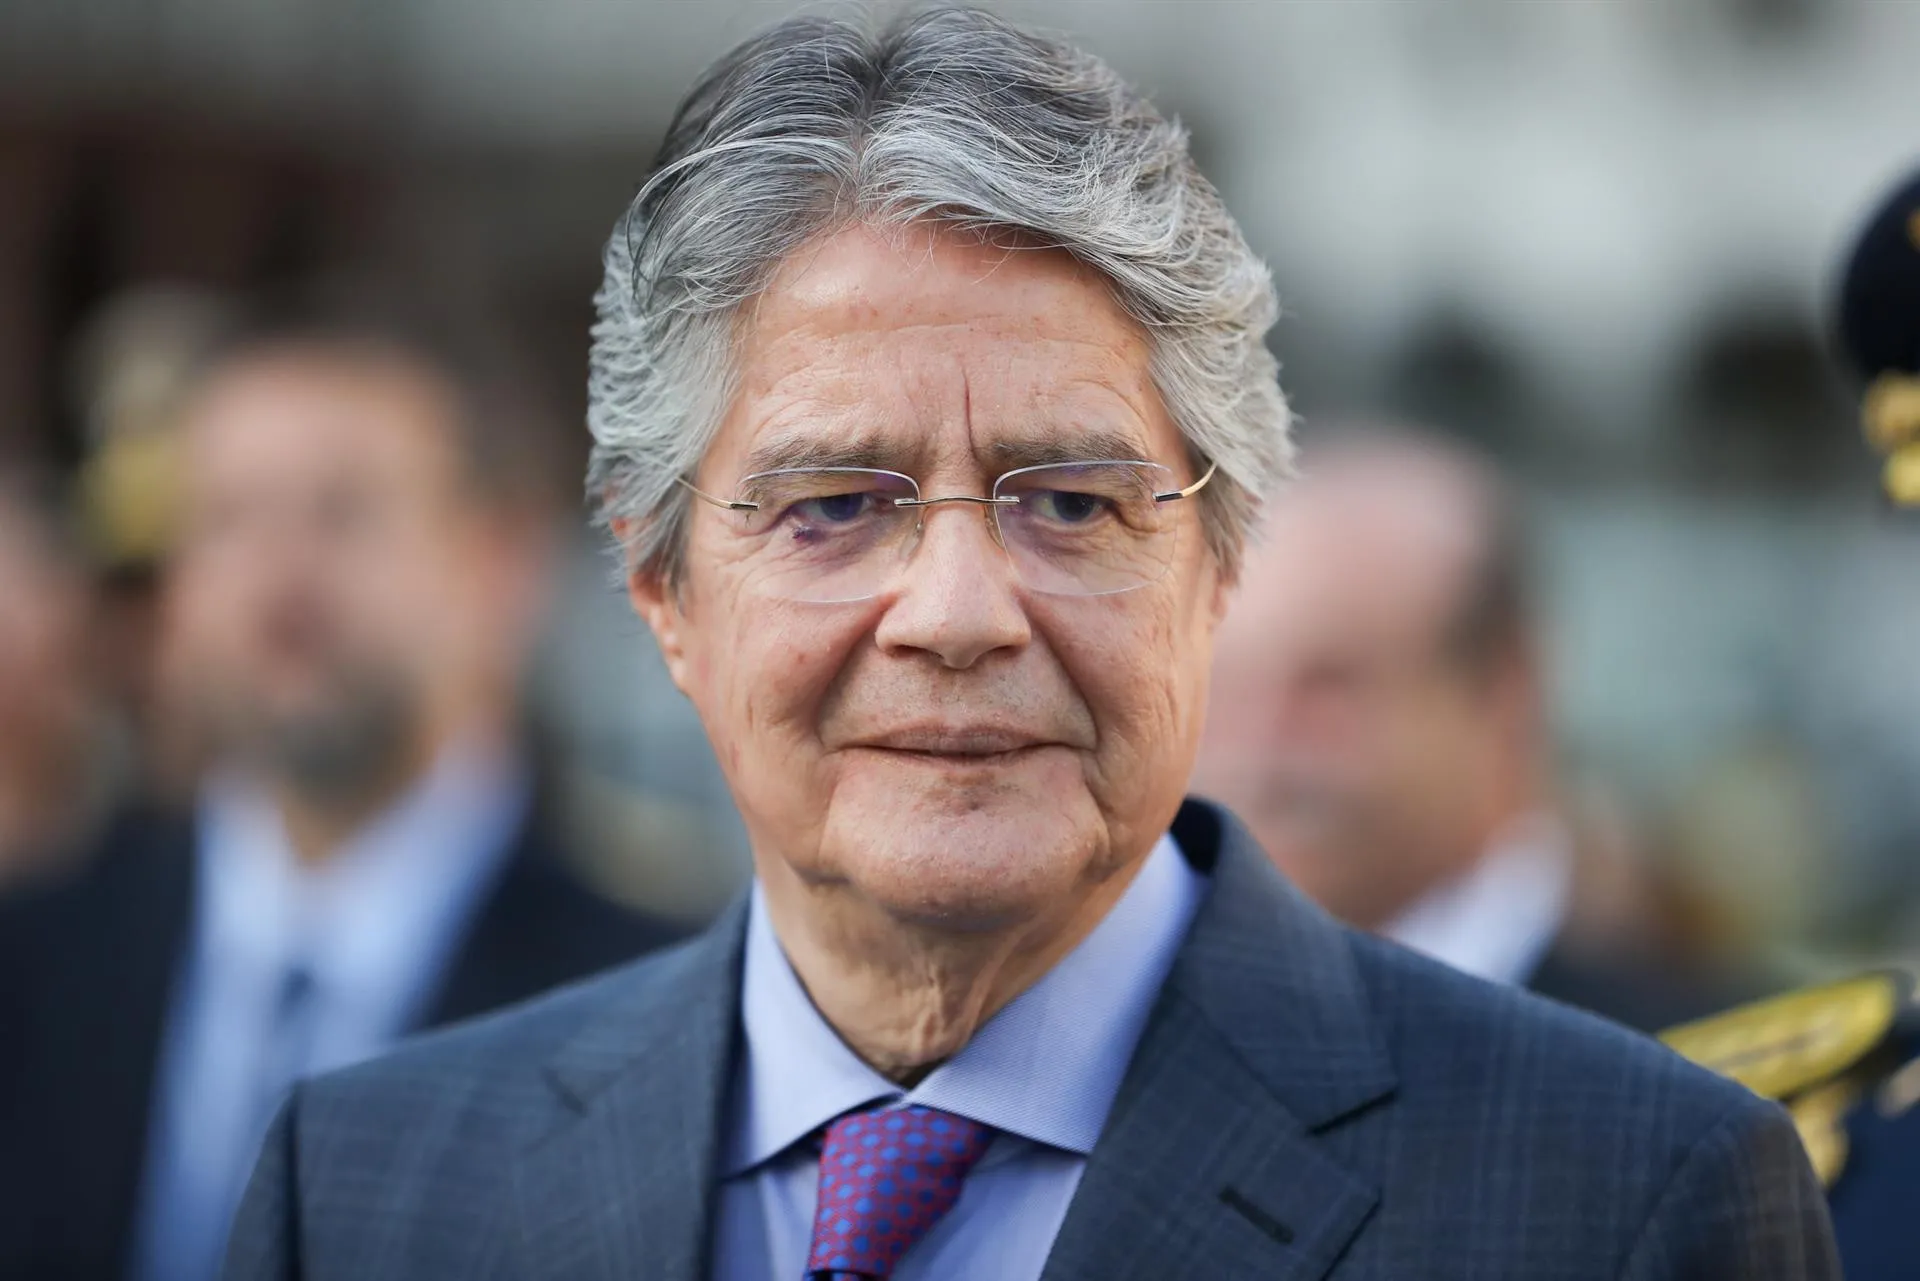 El presidente de Ecuador se salva de ser destituido por el Parlamento